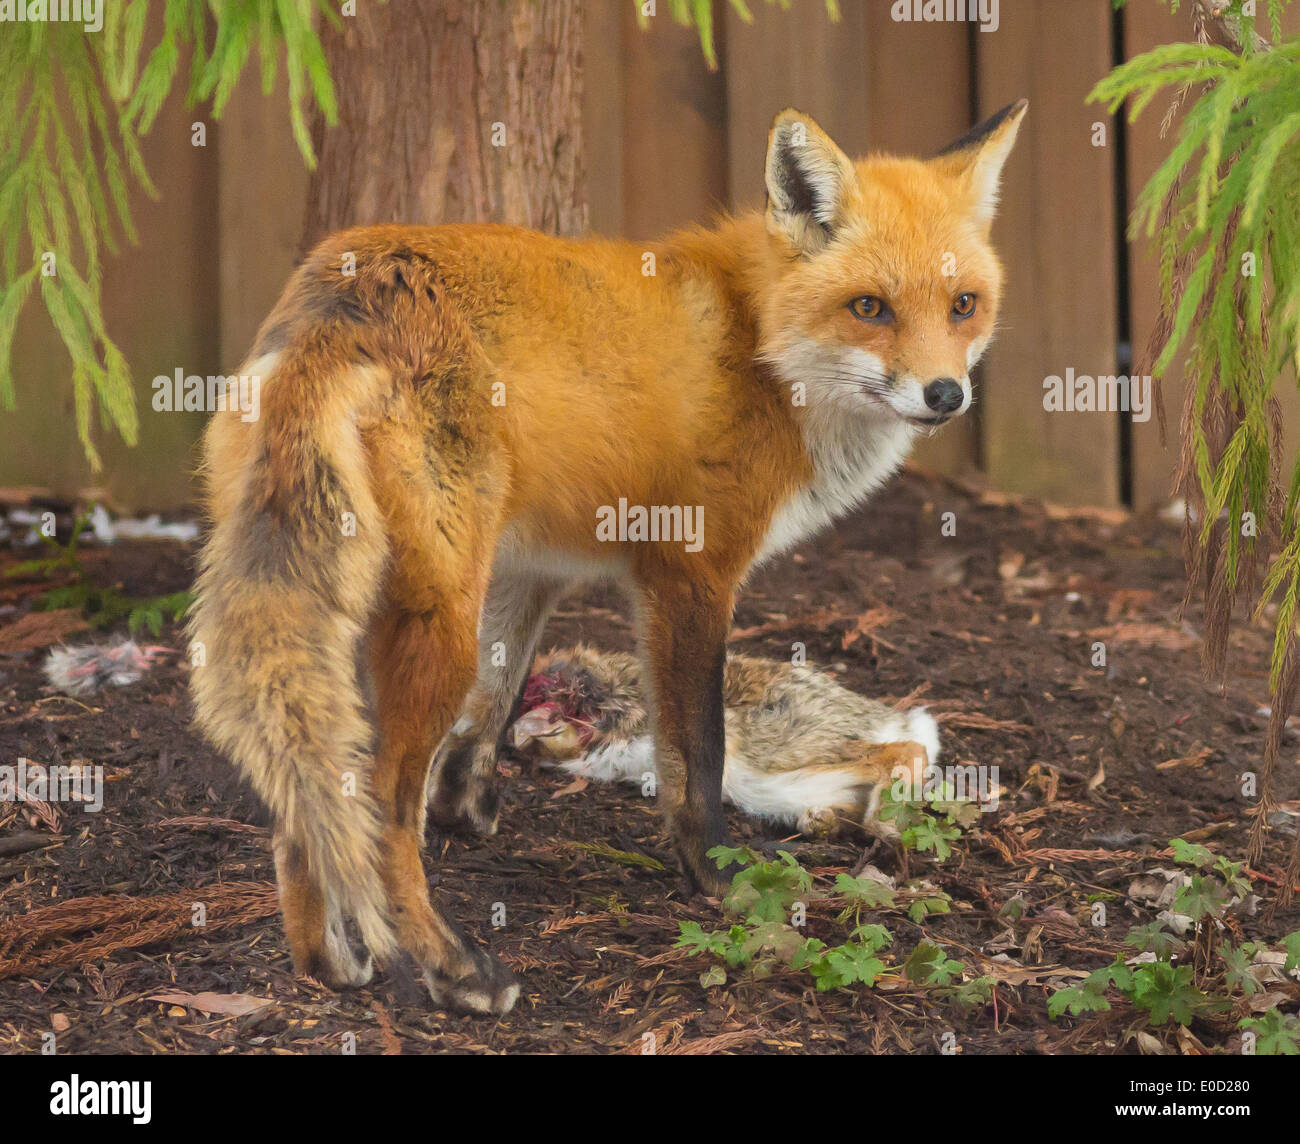 ARLINGTON, VIRGINIA, EE.UU. - El Zorro, Vulpes vulpes, en residencial jardín con despojos de conejo. Foto de stock